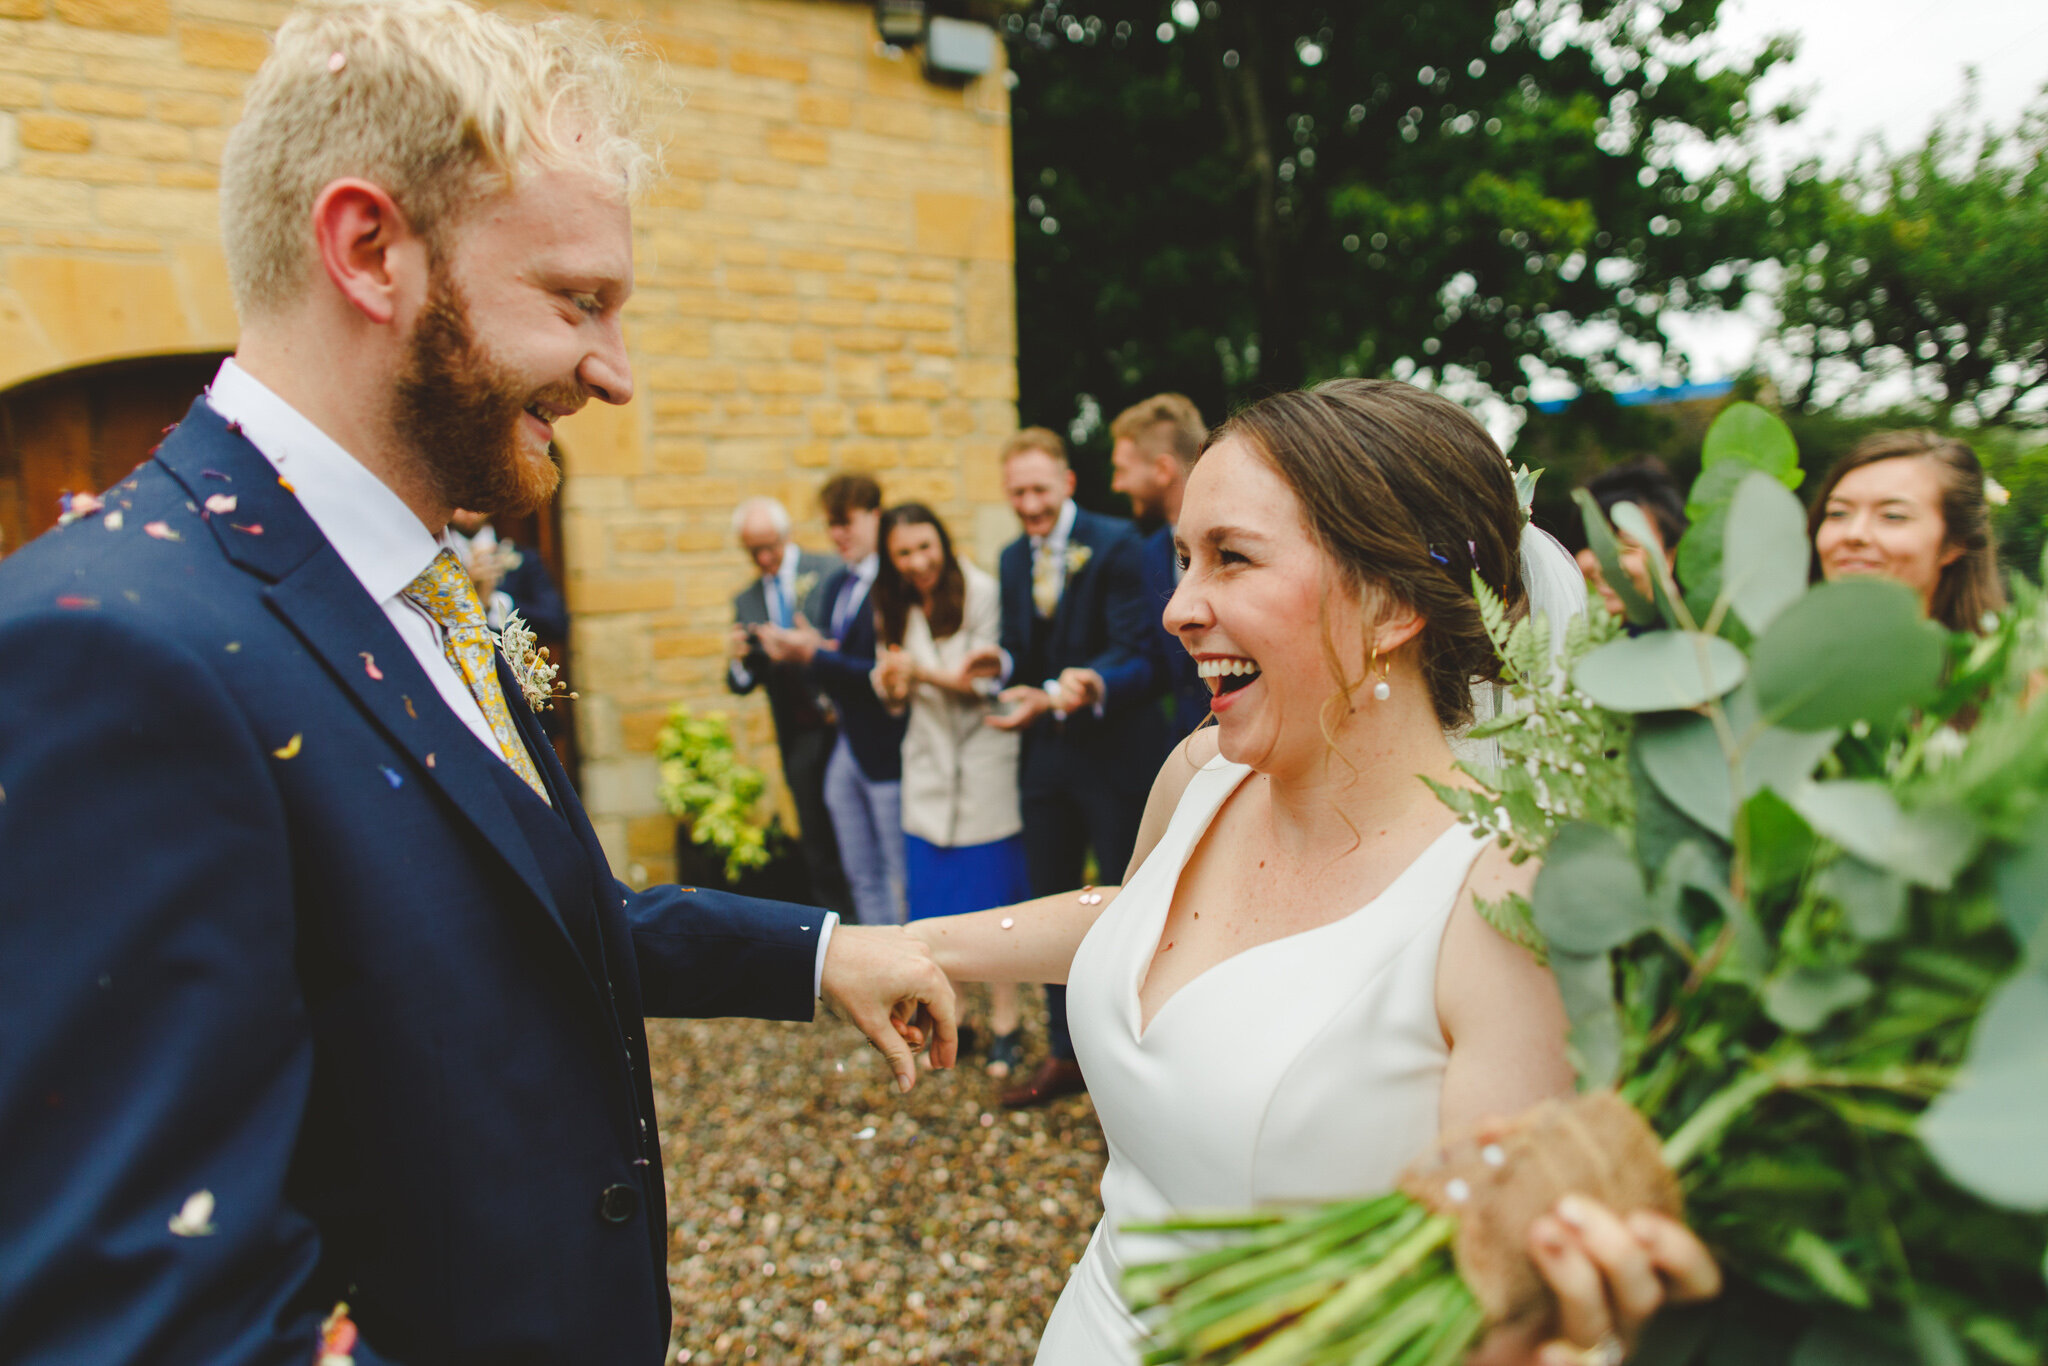 derbyshire-wedding-elopement-photographer-best-2020-21.jpg